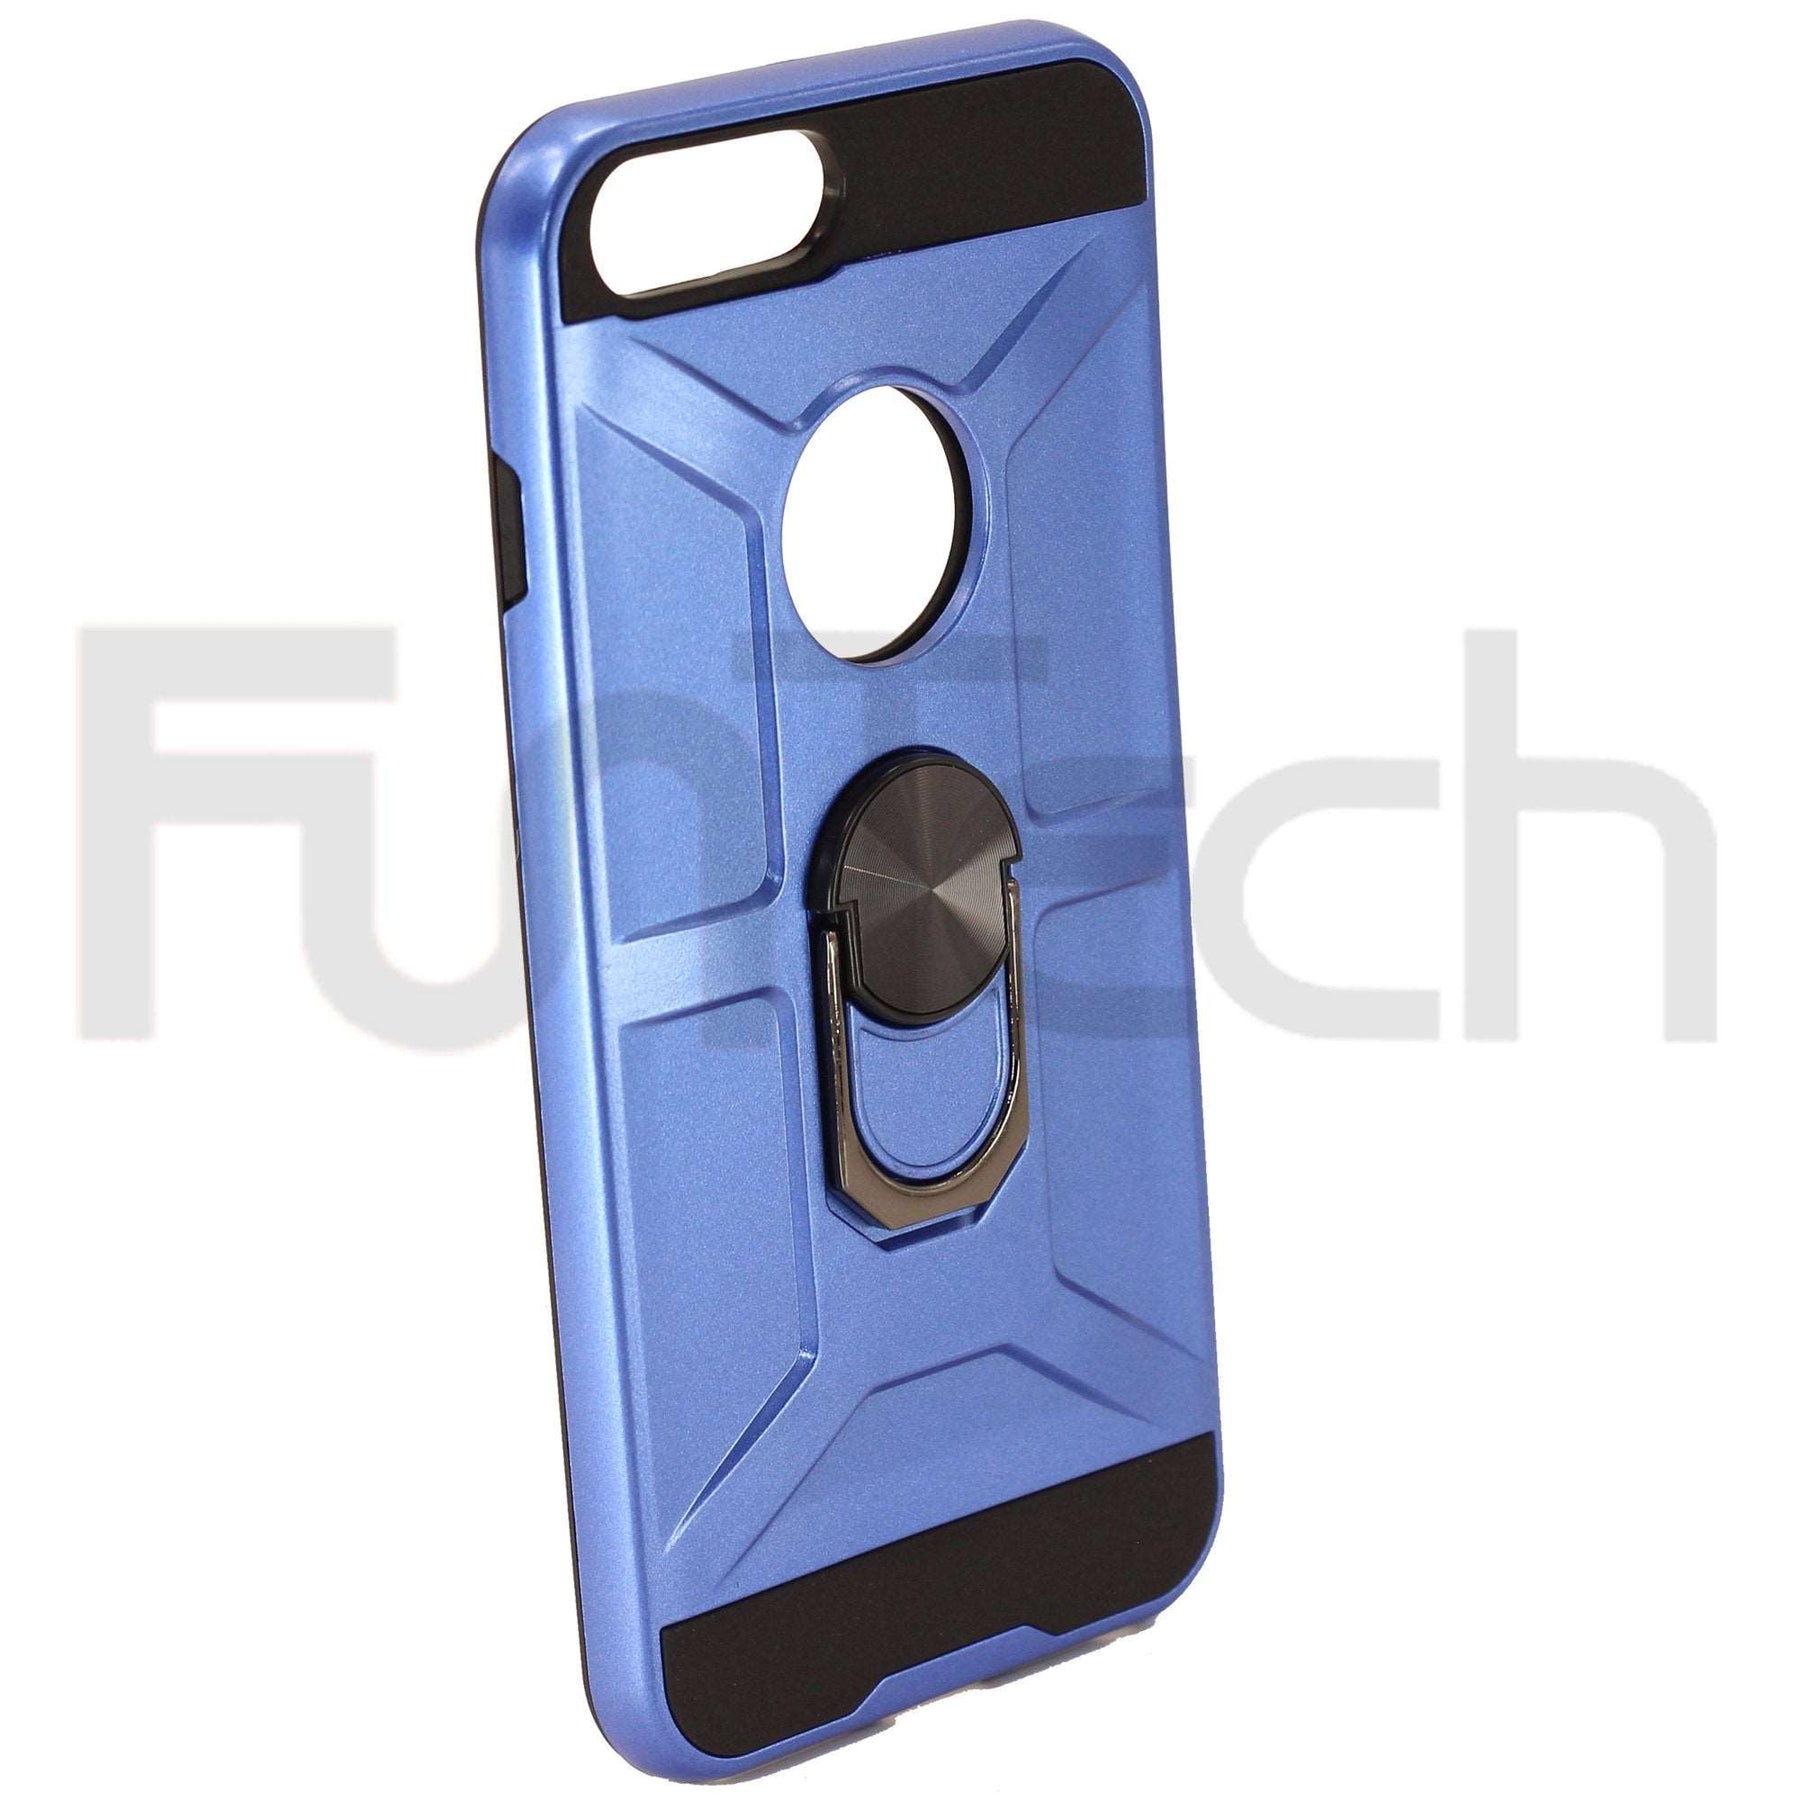 Apple iPhone 7/8 Plus Ring Armor Case Dark Blue